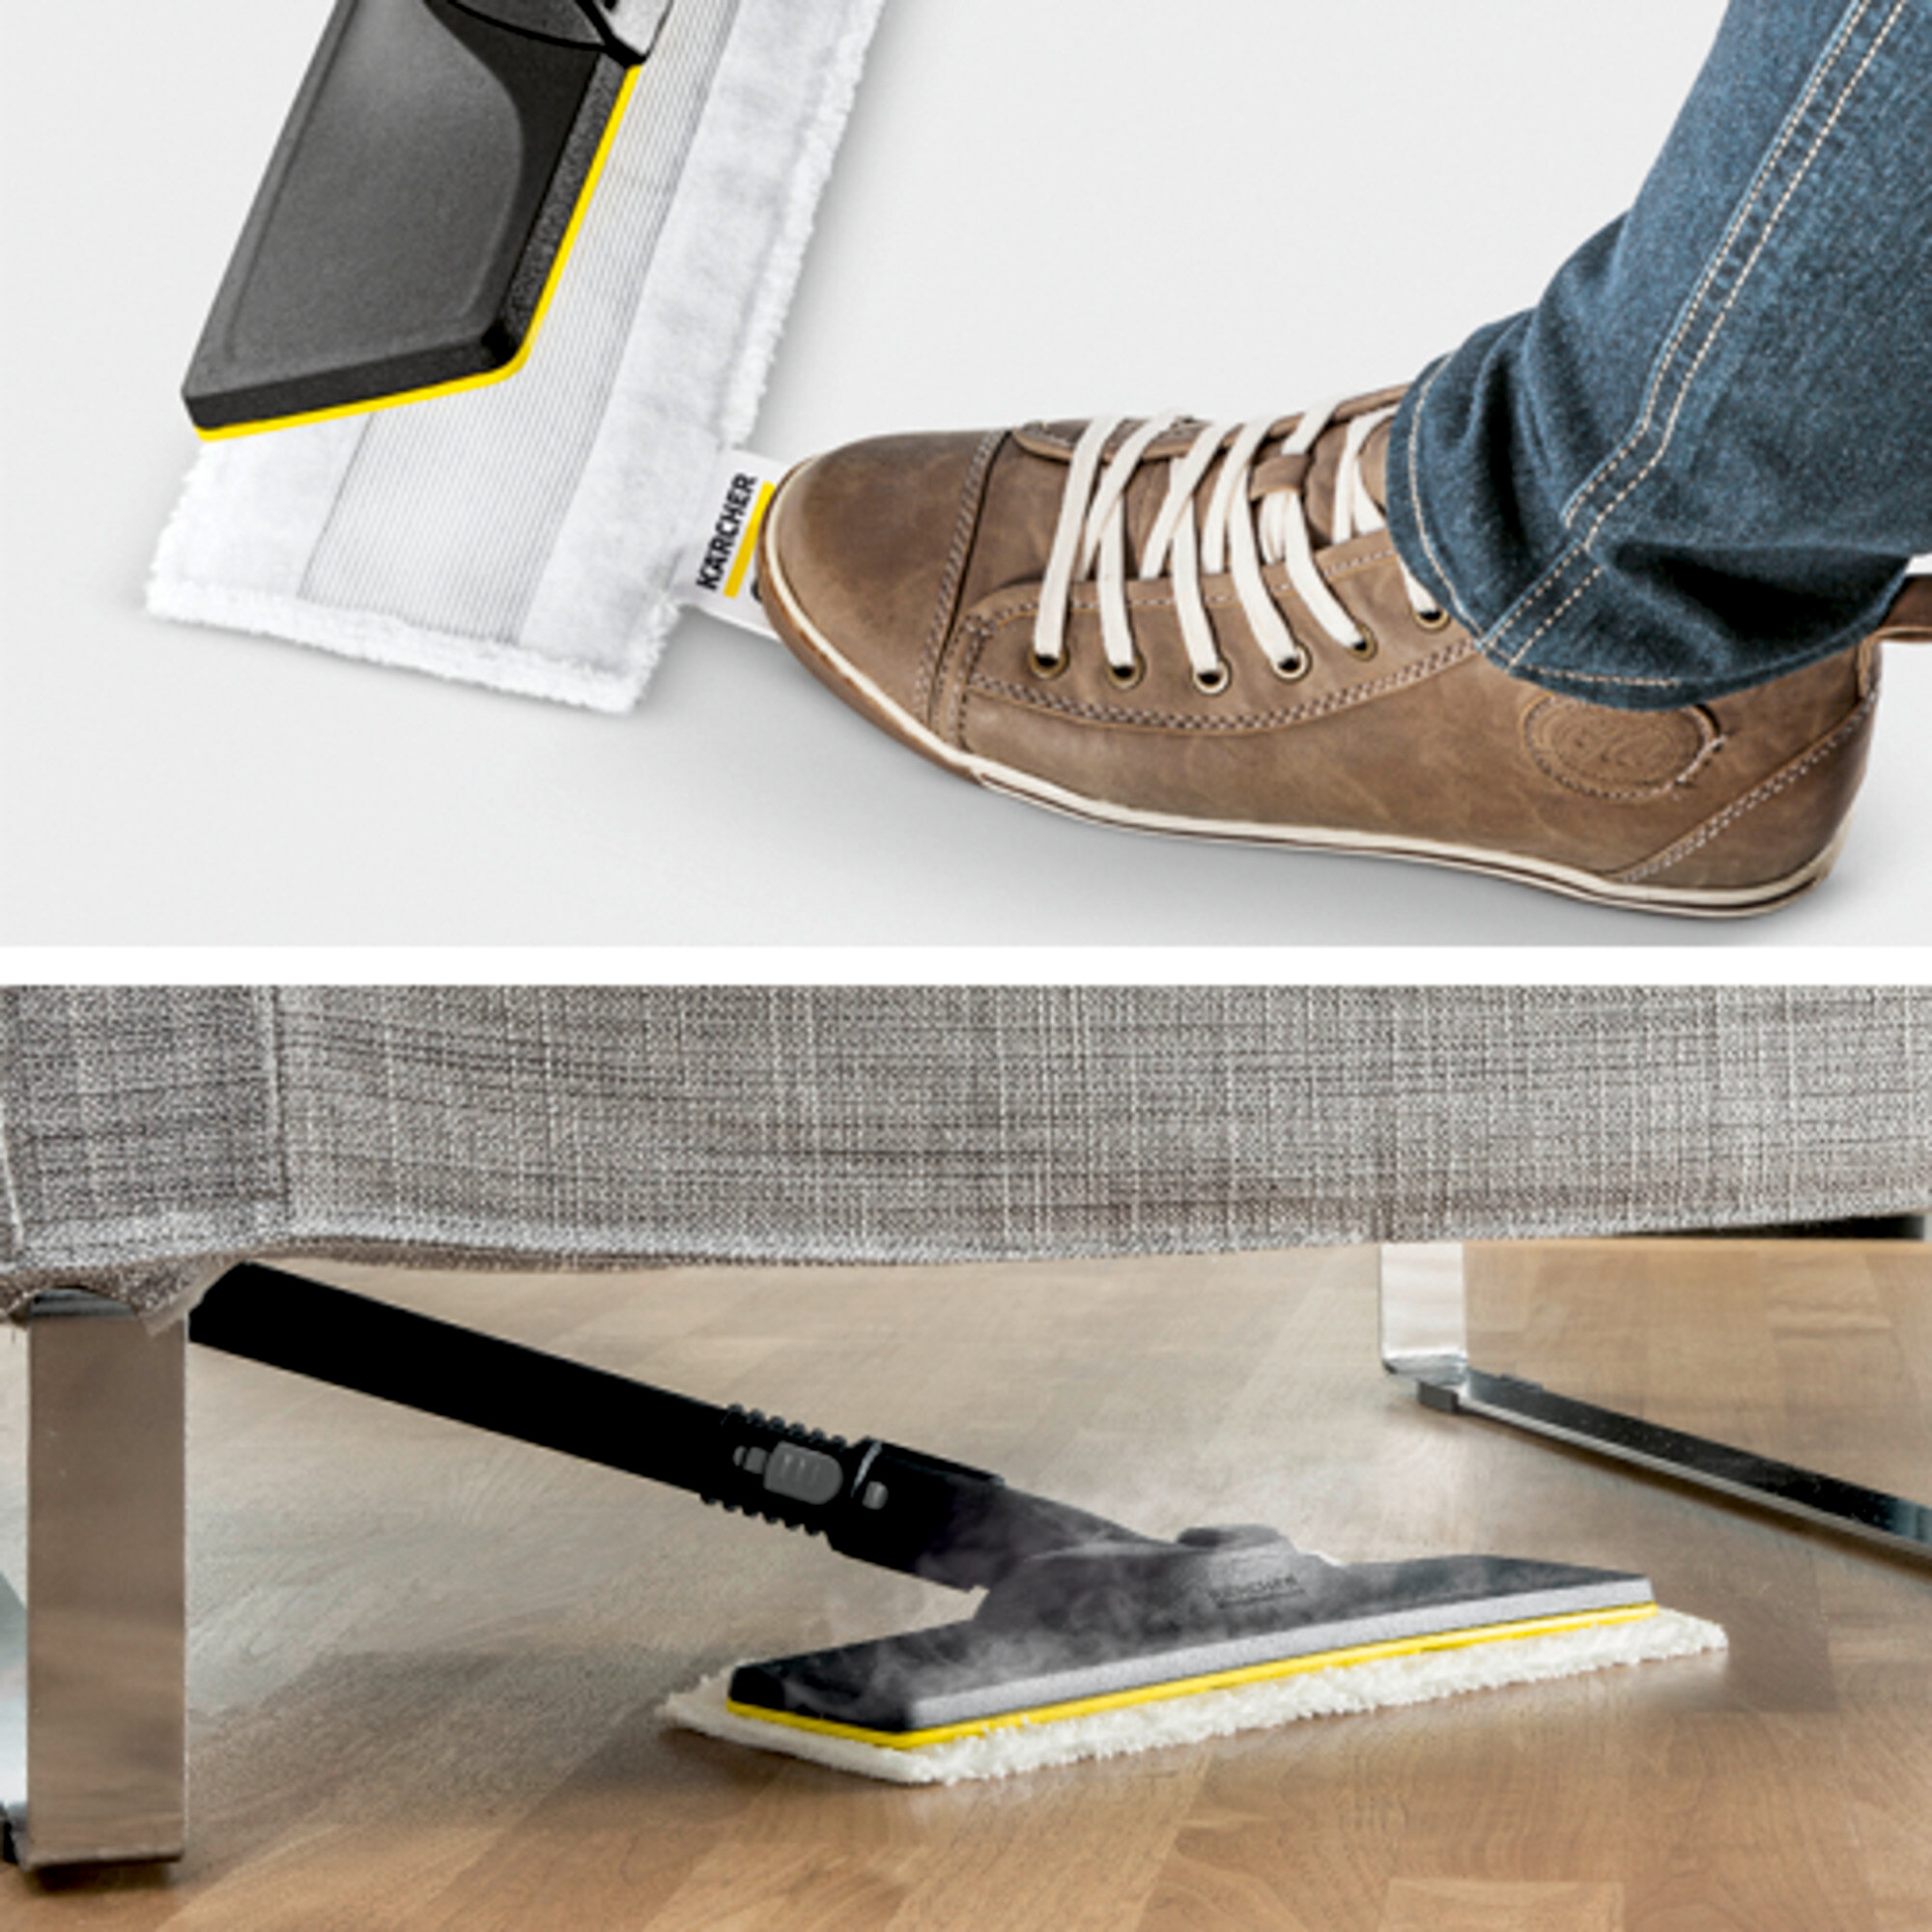  SC 5 Premium Iron Plug: Põrandapuhastuskomplekt EasyFix, kuhu kuuluvad painduva ühendusega põrandaotsak ning mugav takjapaelkinnitus põrandalapi jaoks.